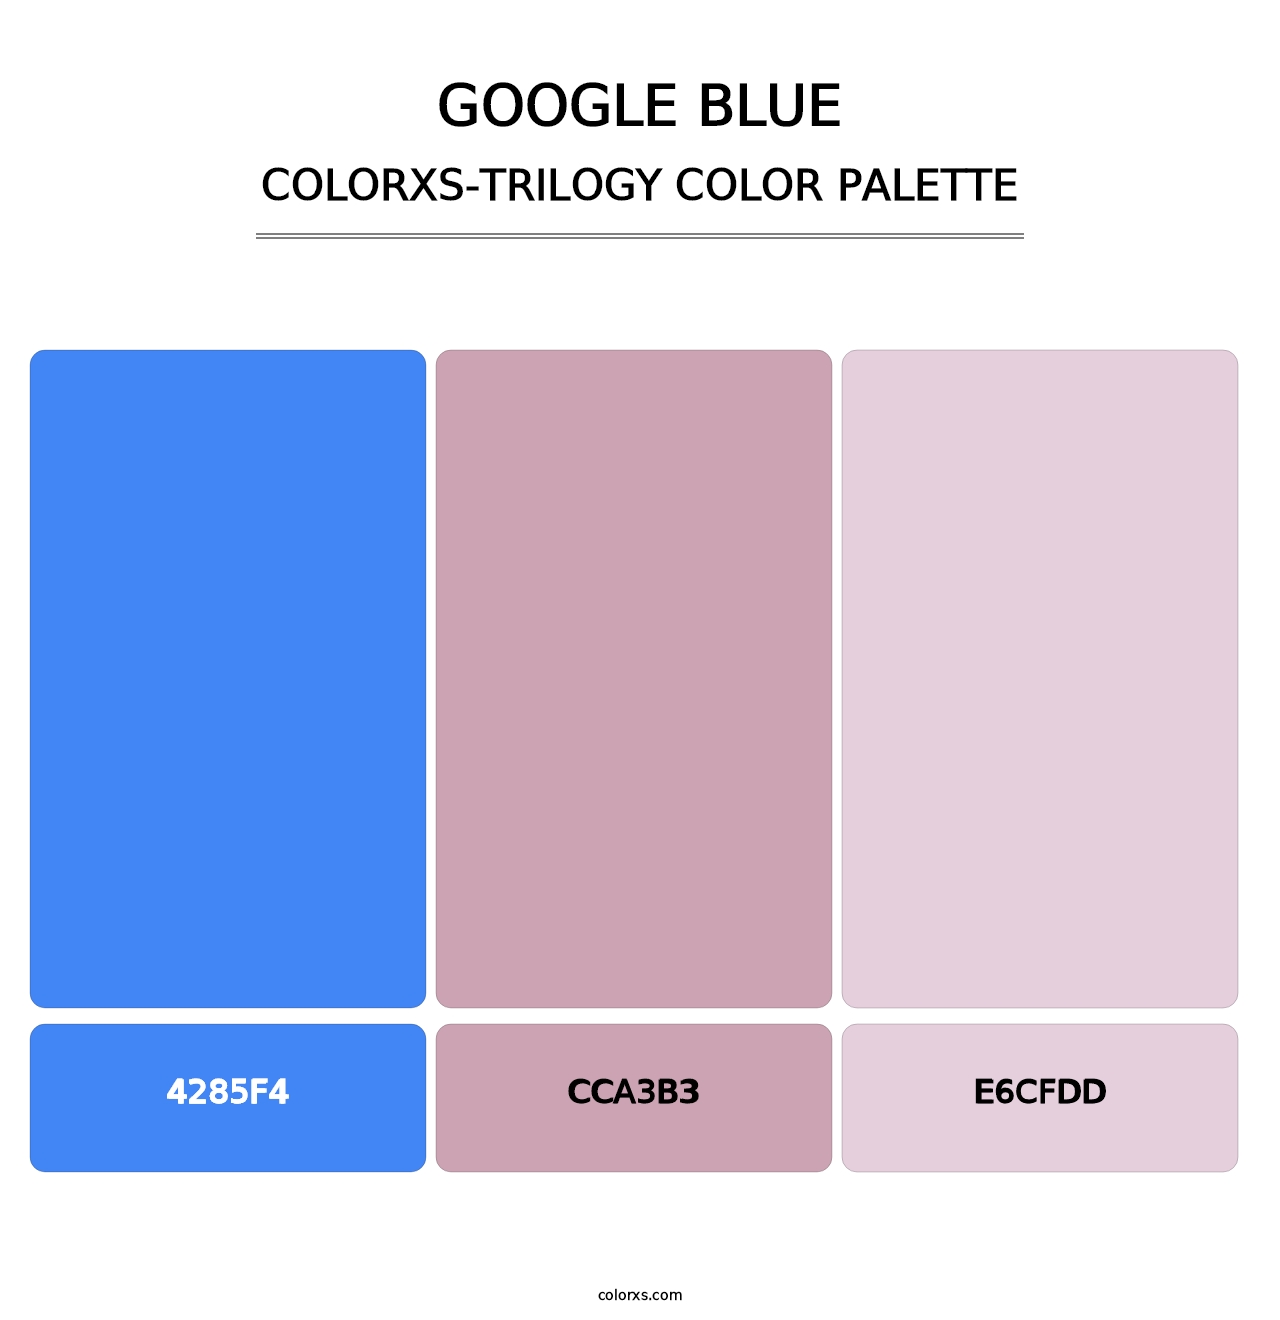 Google Blue - Colorxs Trilogy Palette